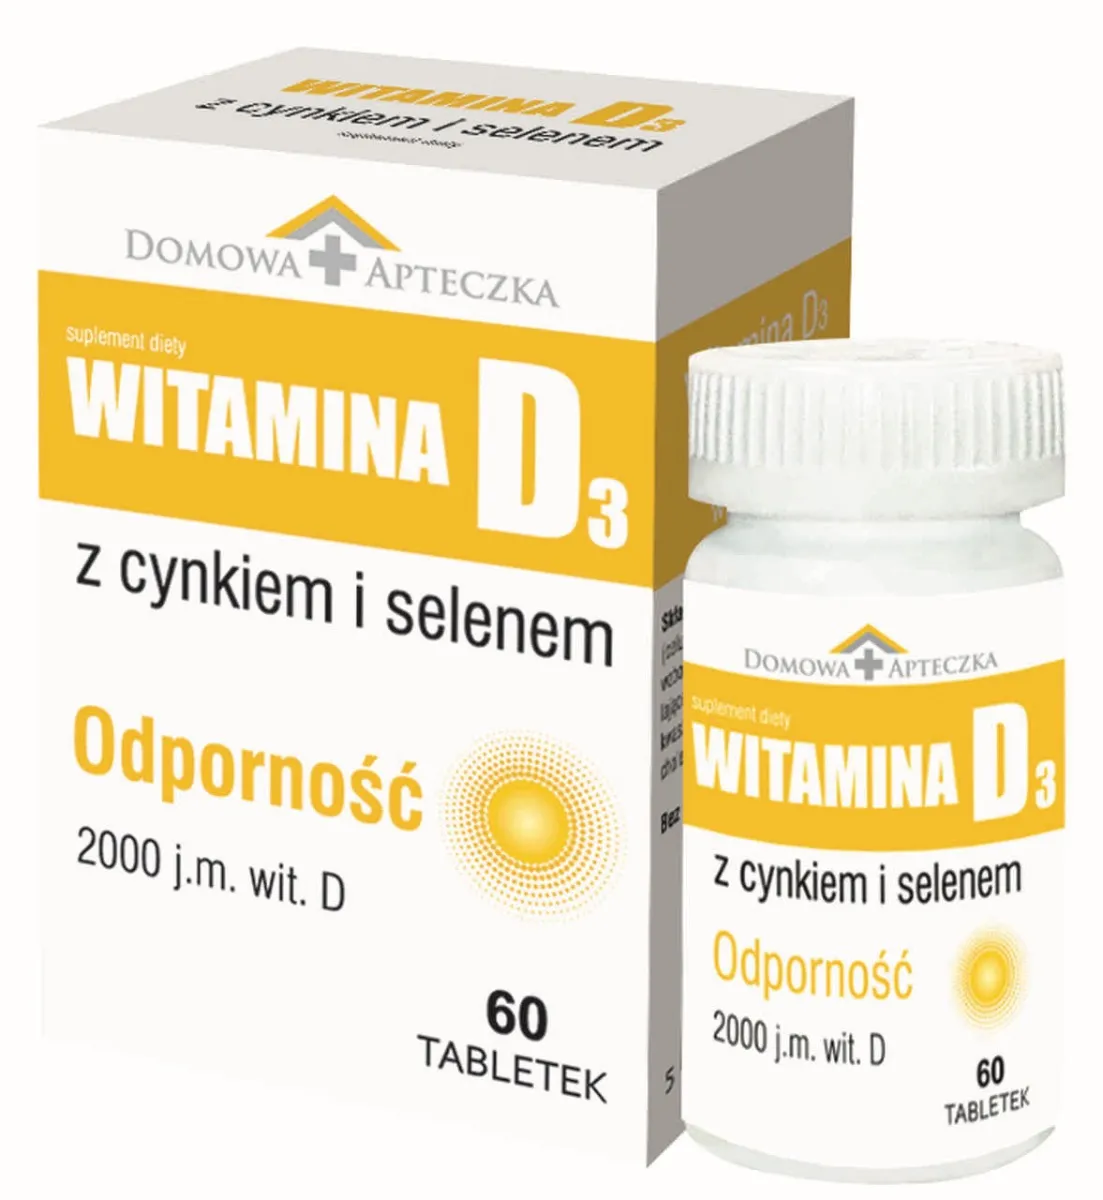 Domowa Apteczka Witamina D3 z Cynkiem i Selenem, suplement diety, 60 tabletek